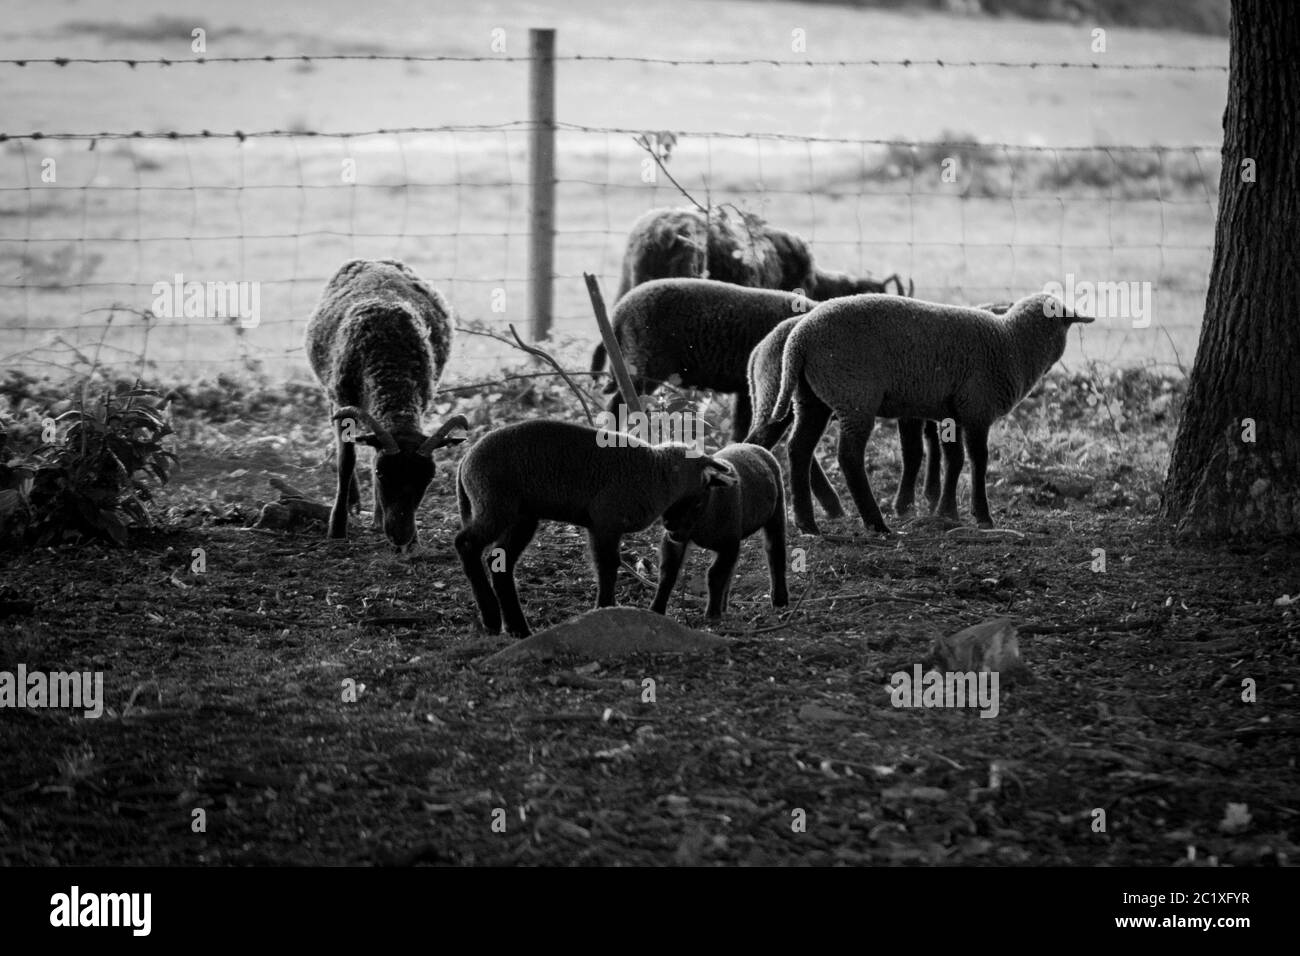 Photographie noir blanc de mouton brun sur un pré. Campagne anglaise. Photographie de la faune. Banque D'Images